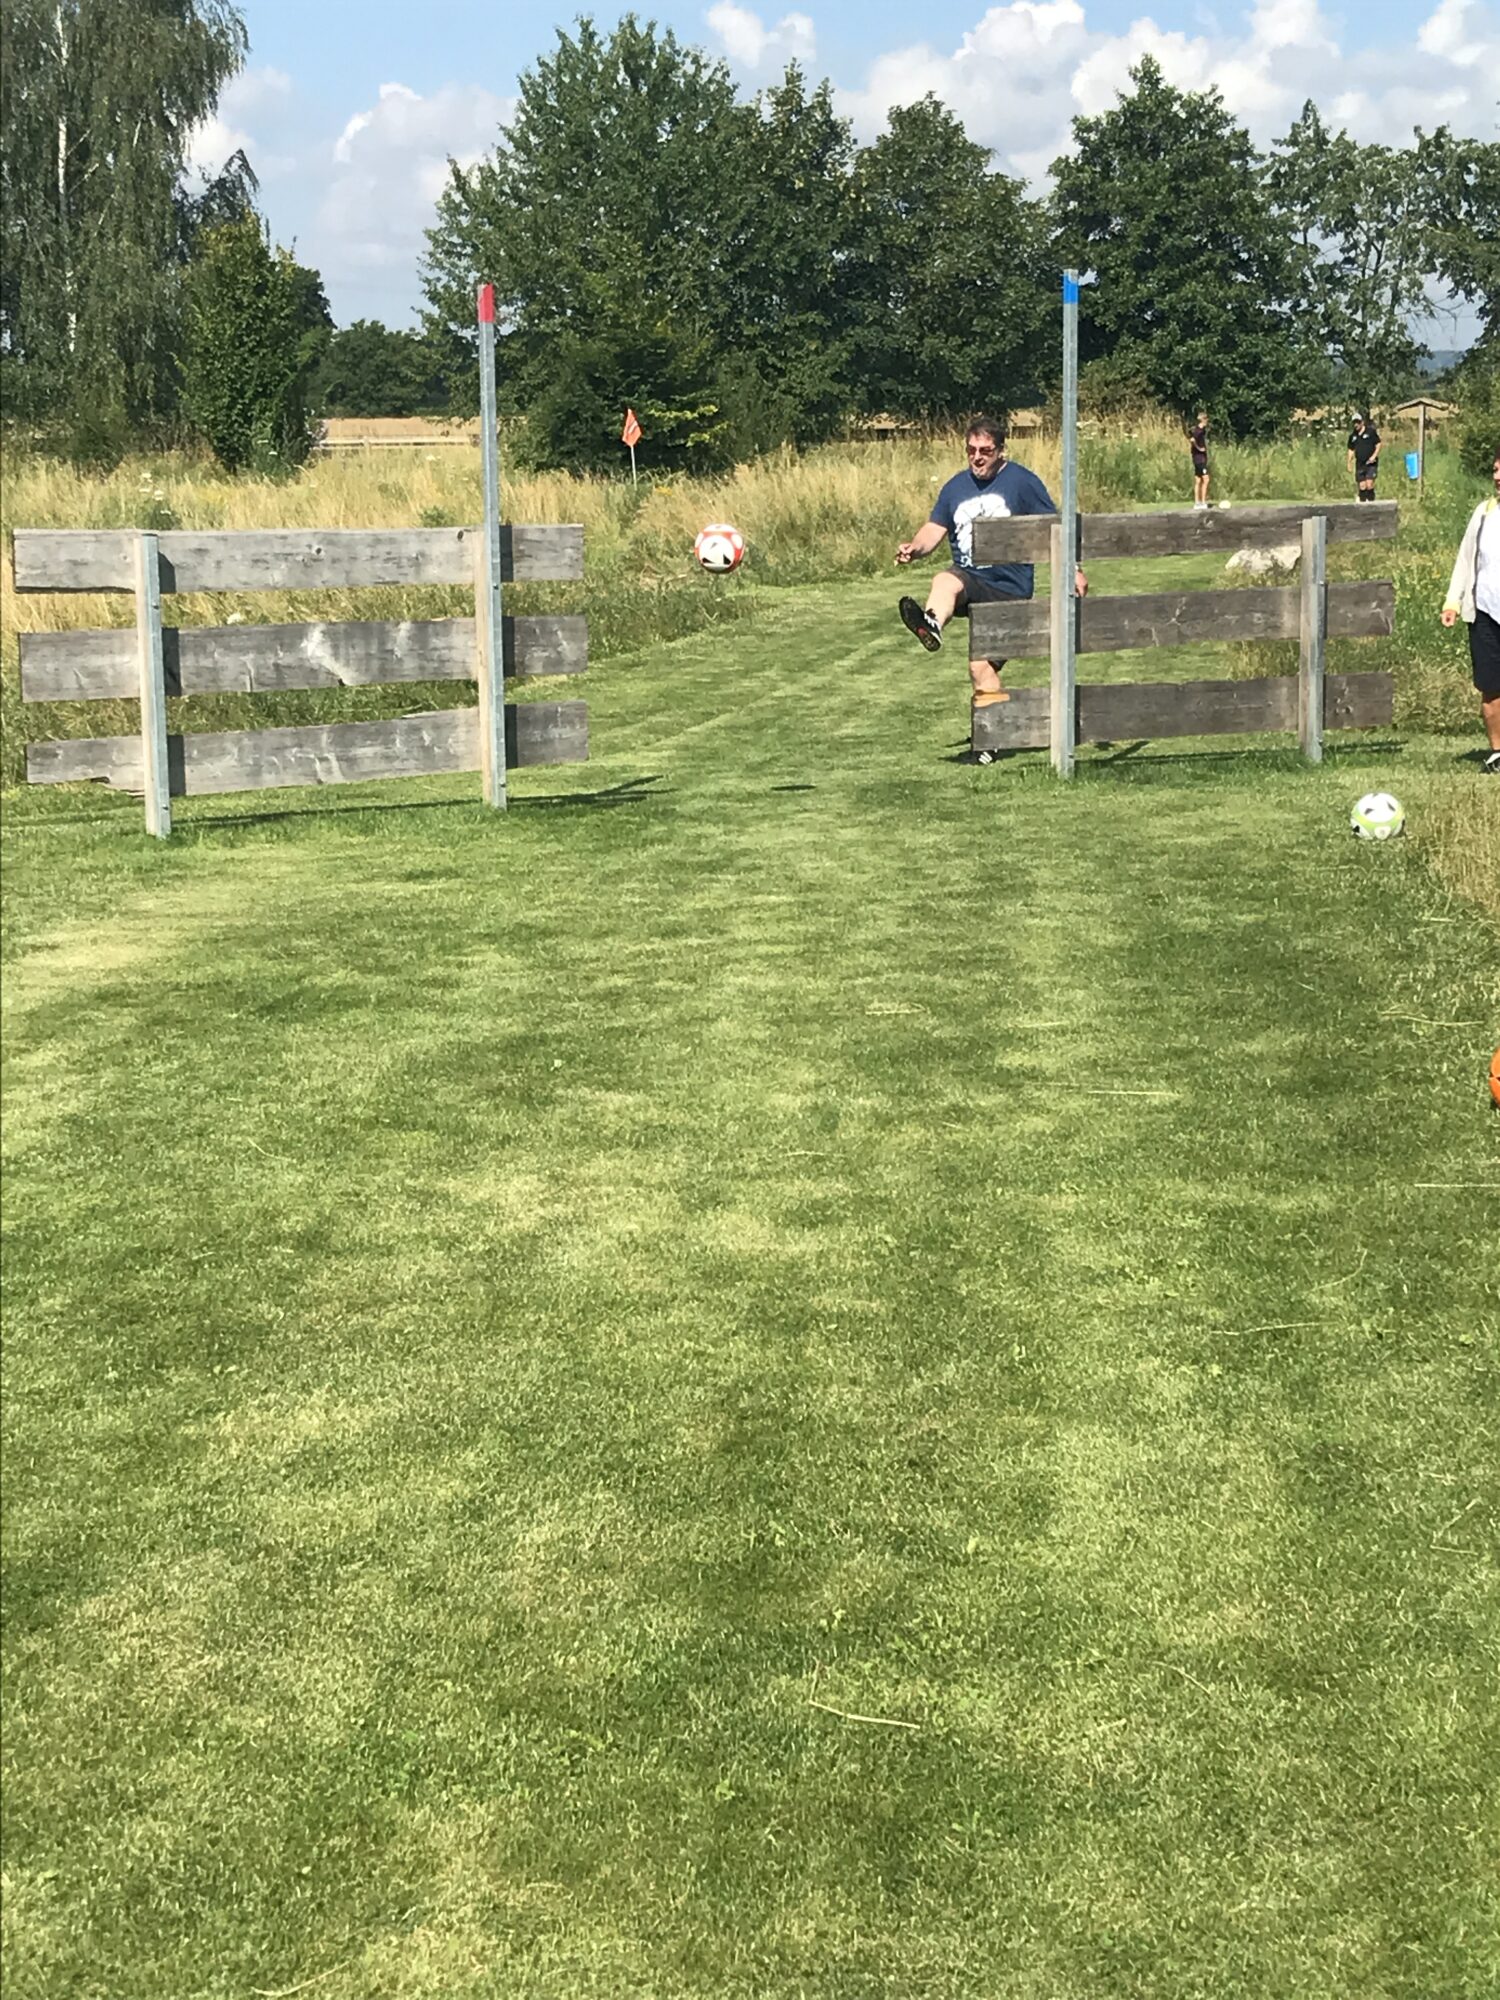 Mann kickt Fußball durch einen Zaun auf einer Wiese des Soccerparks Rehling, im Hintergrund weitere Spieler